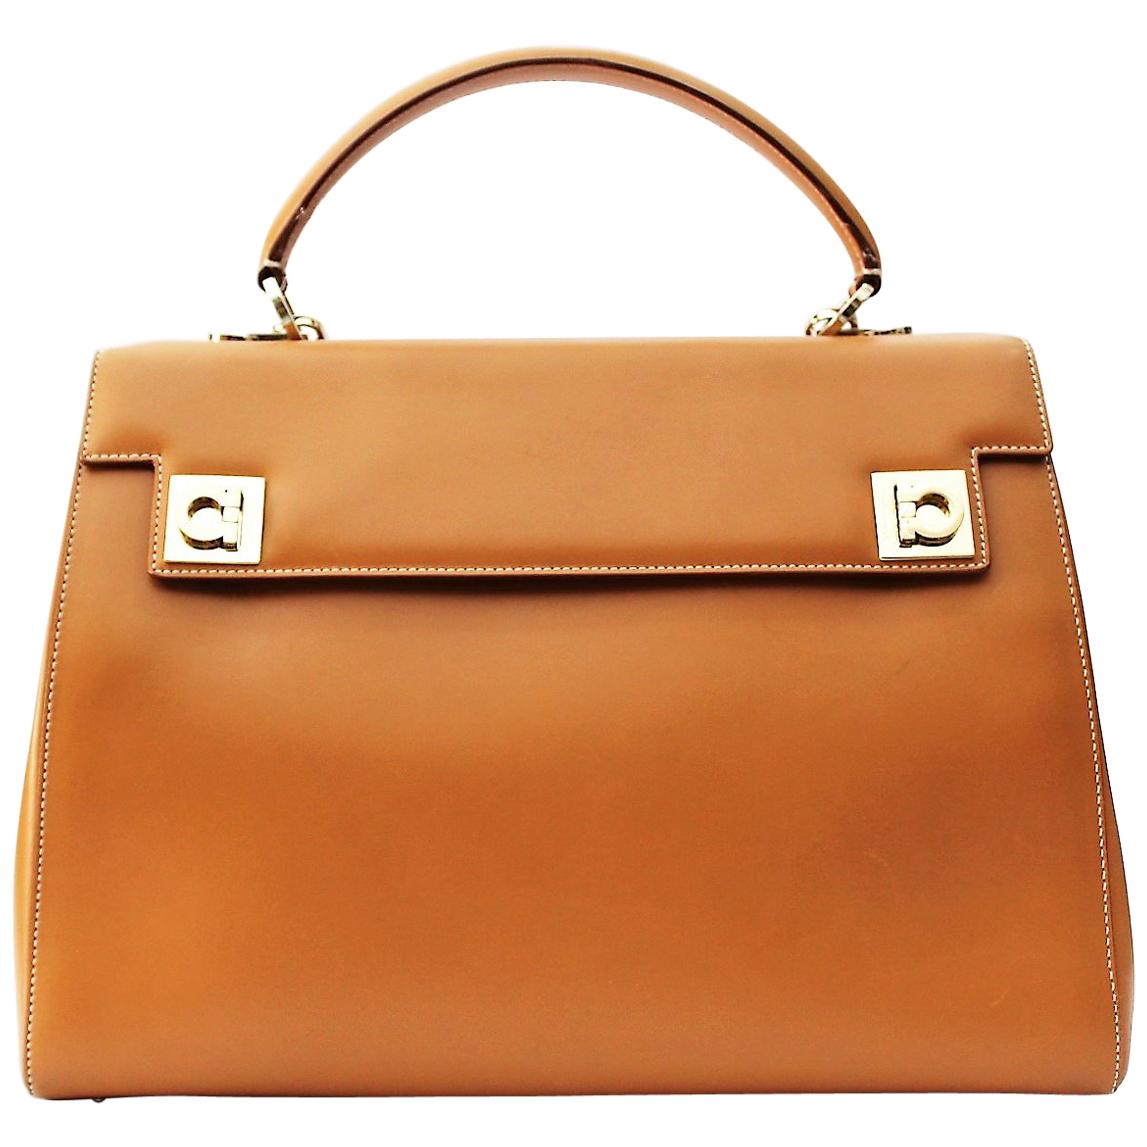 Salvatore Ferragamo Leather Shuolder Bag